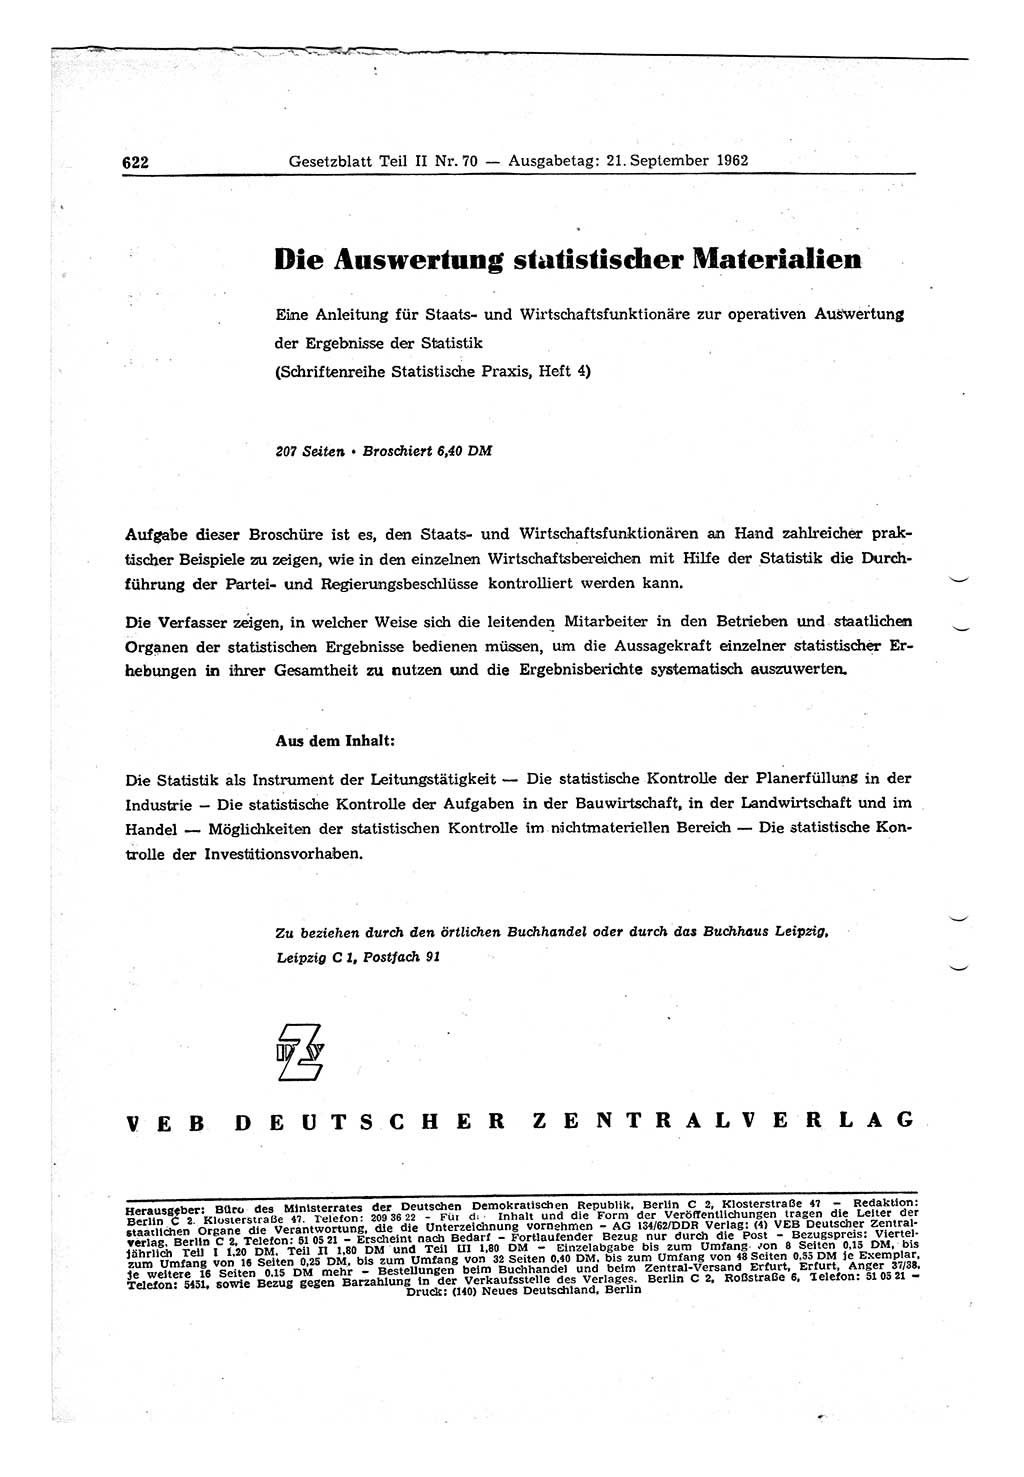 Gesetzblatt (GBl.) der Deutschen Demokratischen Republik (DDR) Teil ⅠⅠ 1962, Seite 622 (GBl. DDR ⅠⅠ 1962, S. 622)